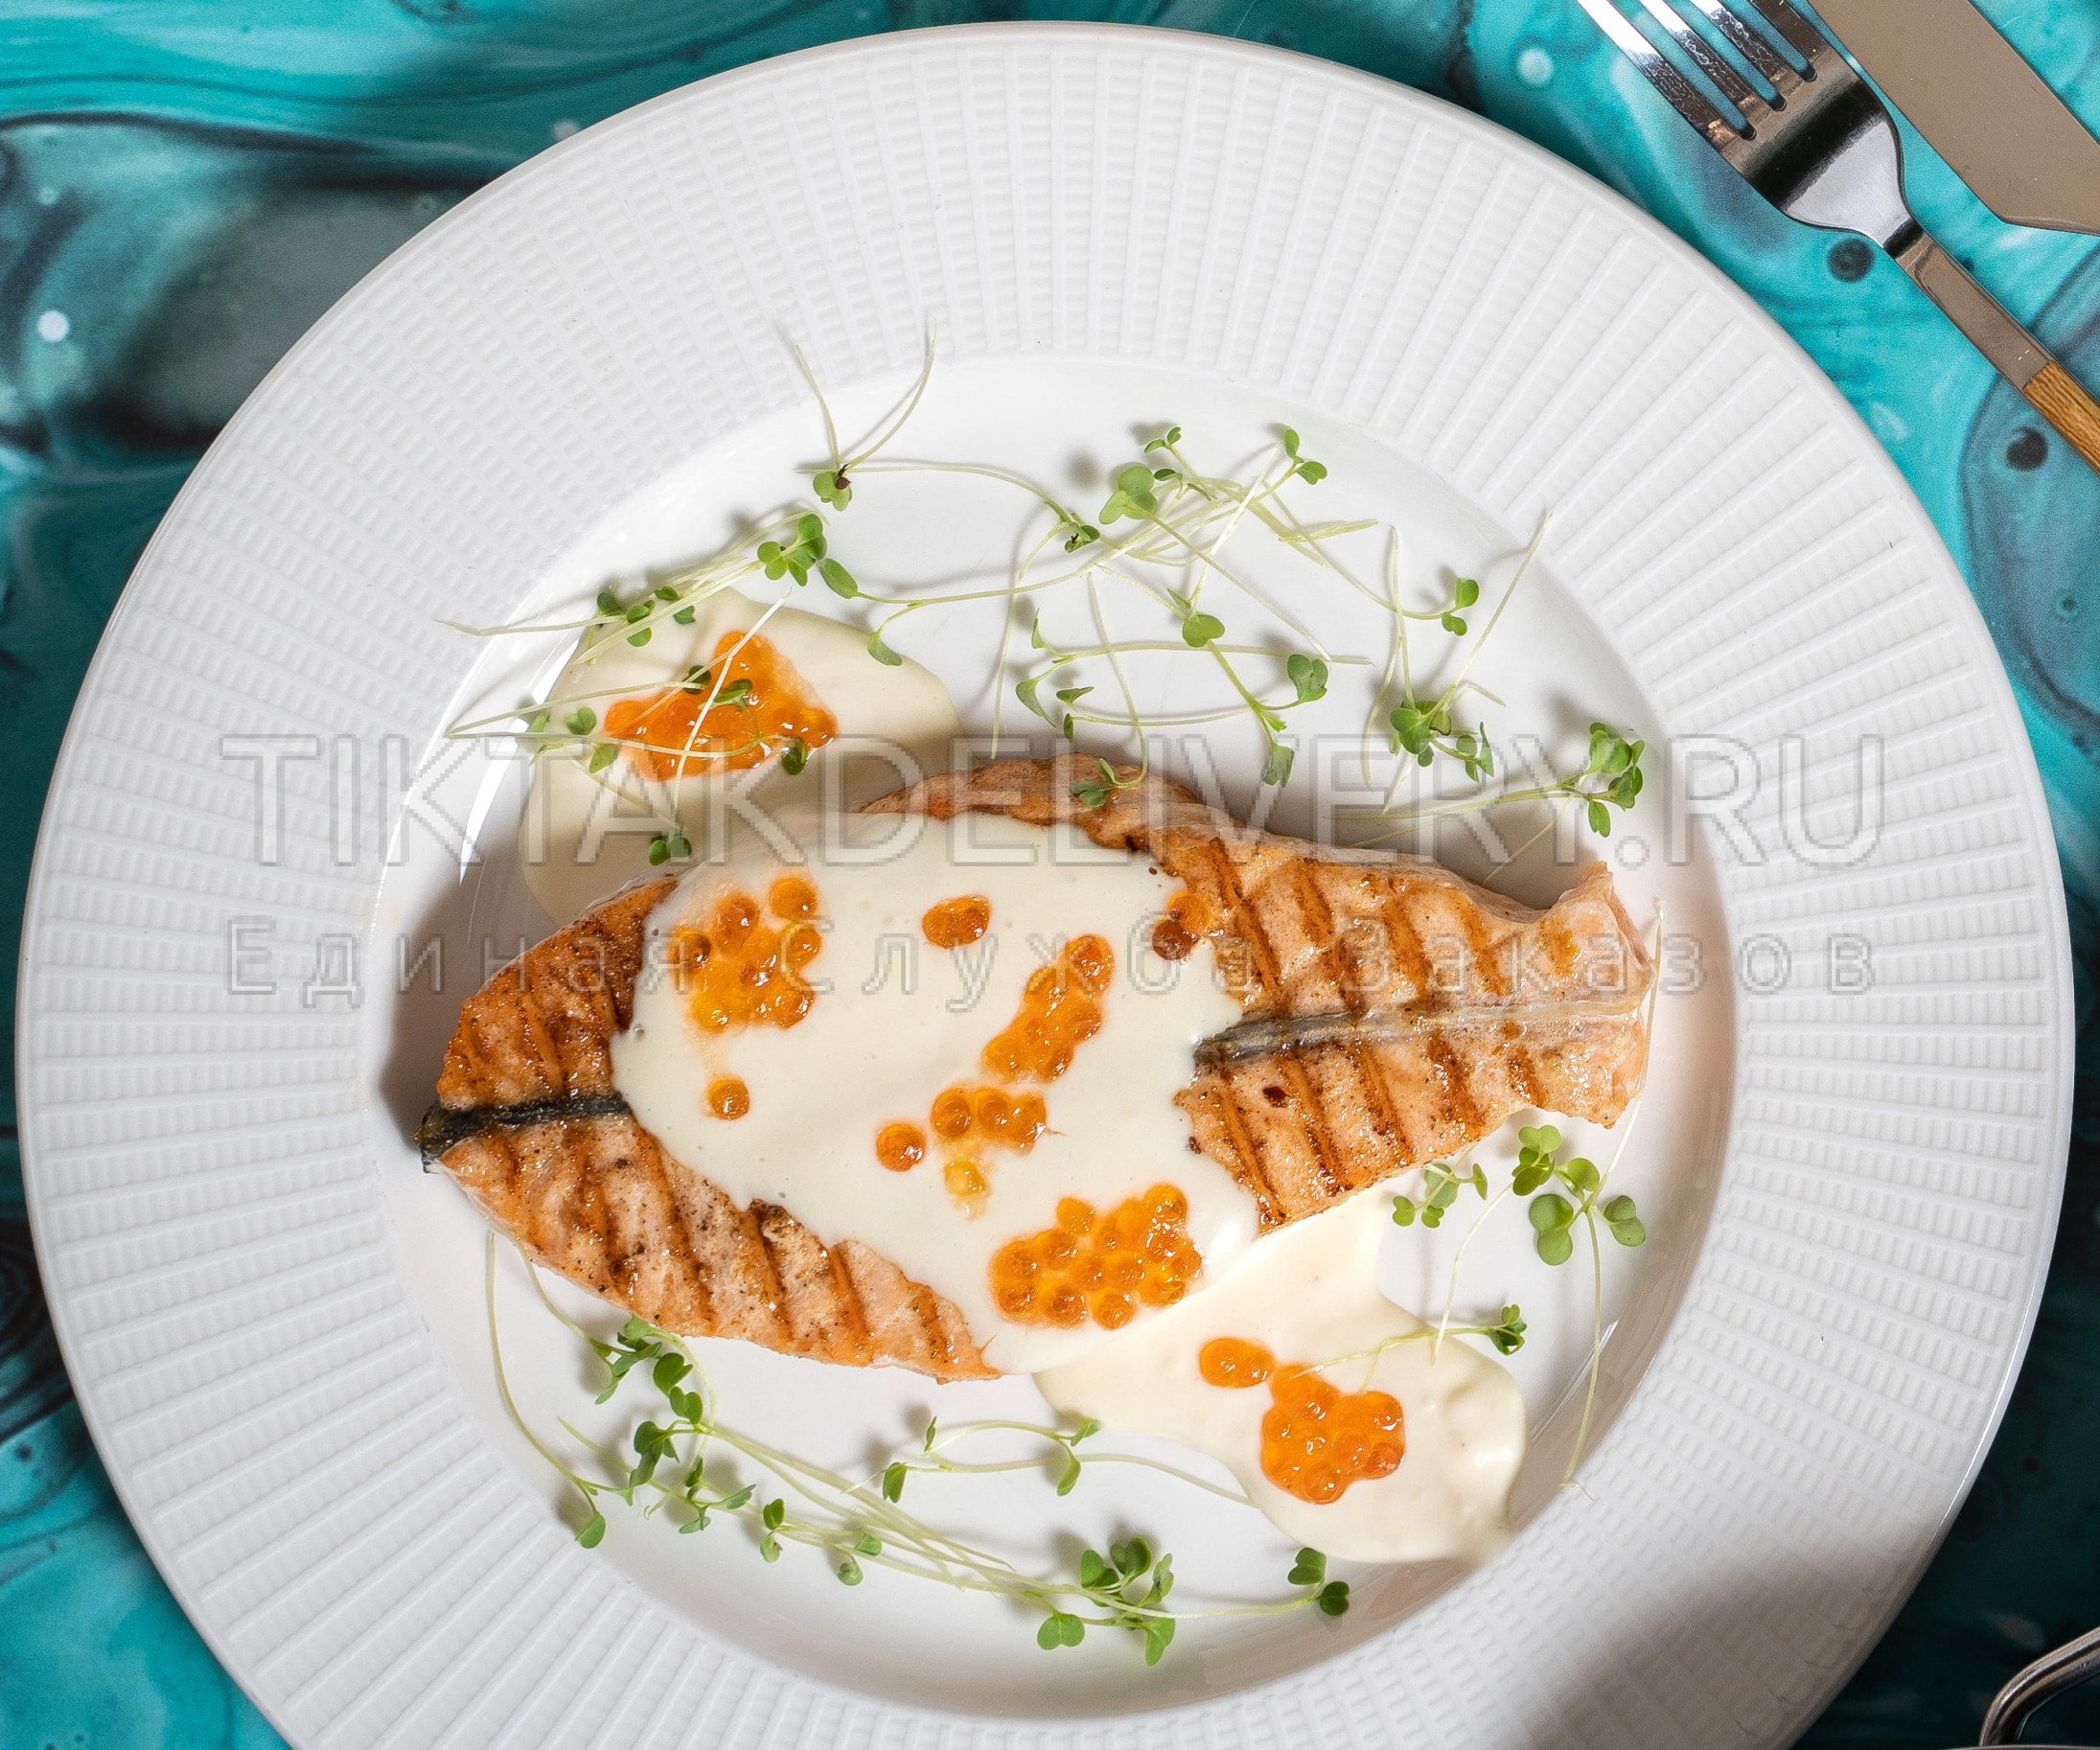 Стейк лосося в сливочно-икорном соусе